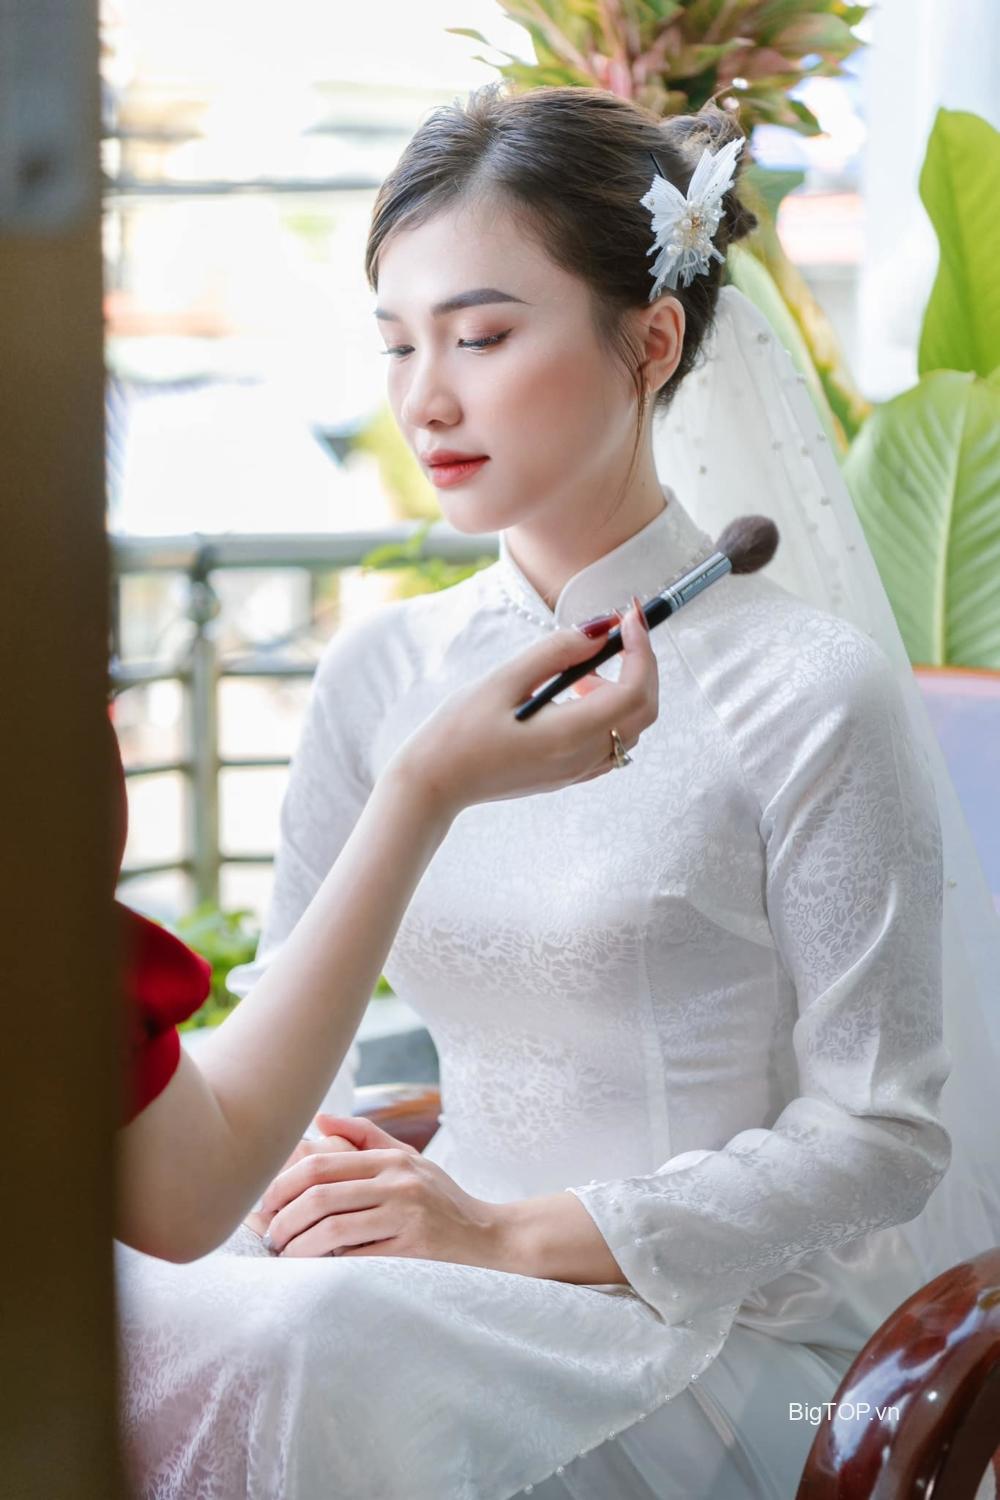 Top 6 Tiệm trang điểm cô dâu đẹp quyến rũ nhất Bình Định (An Nhơn, Tuy  Phước) - Big TOP Việt Nam